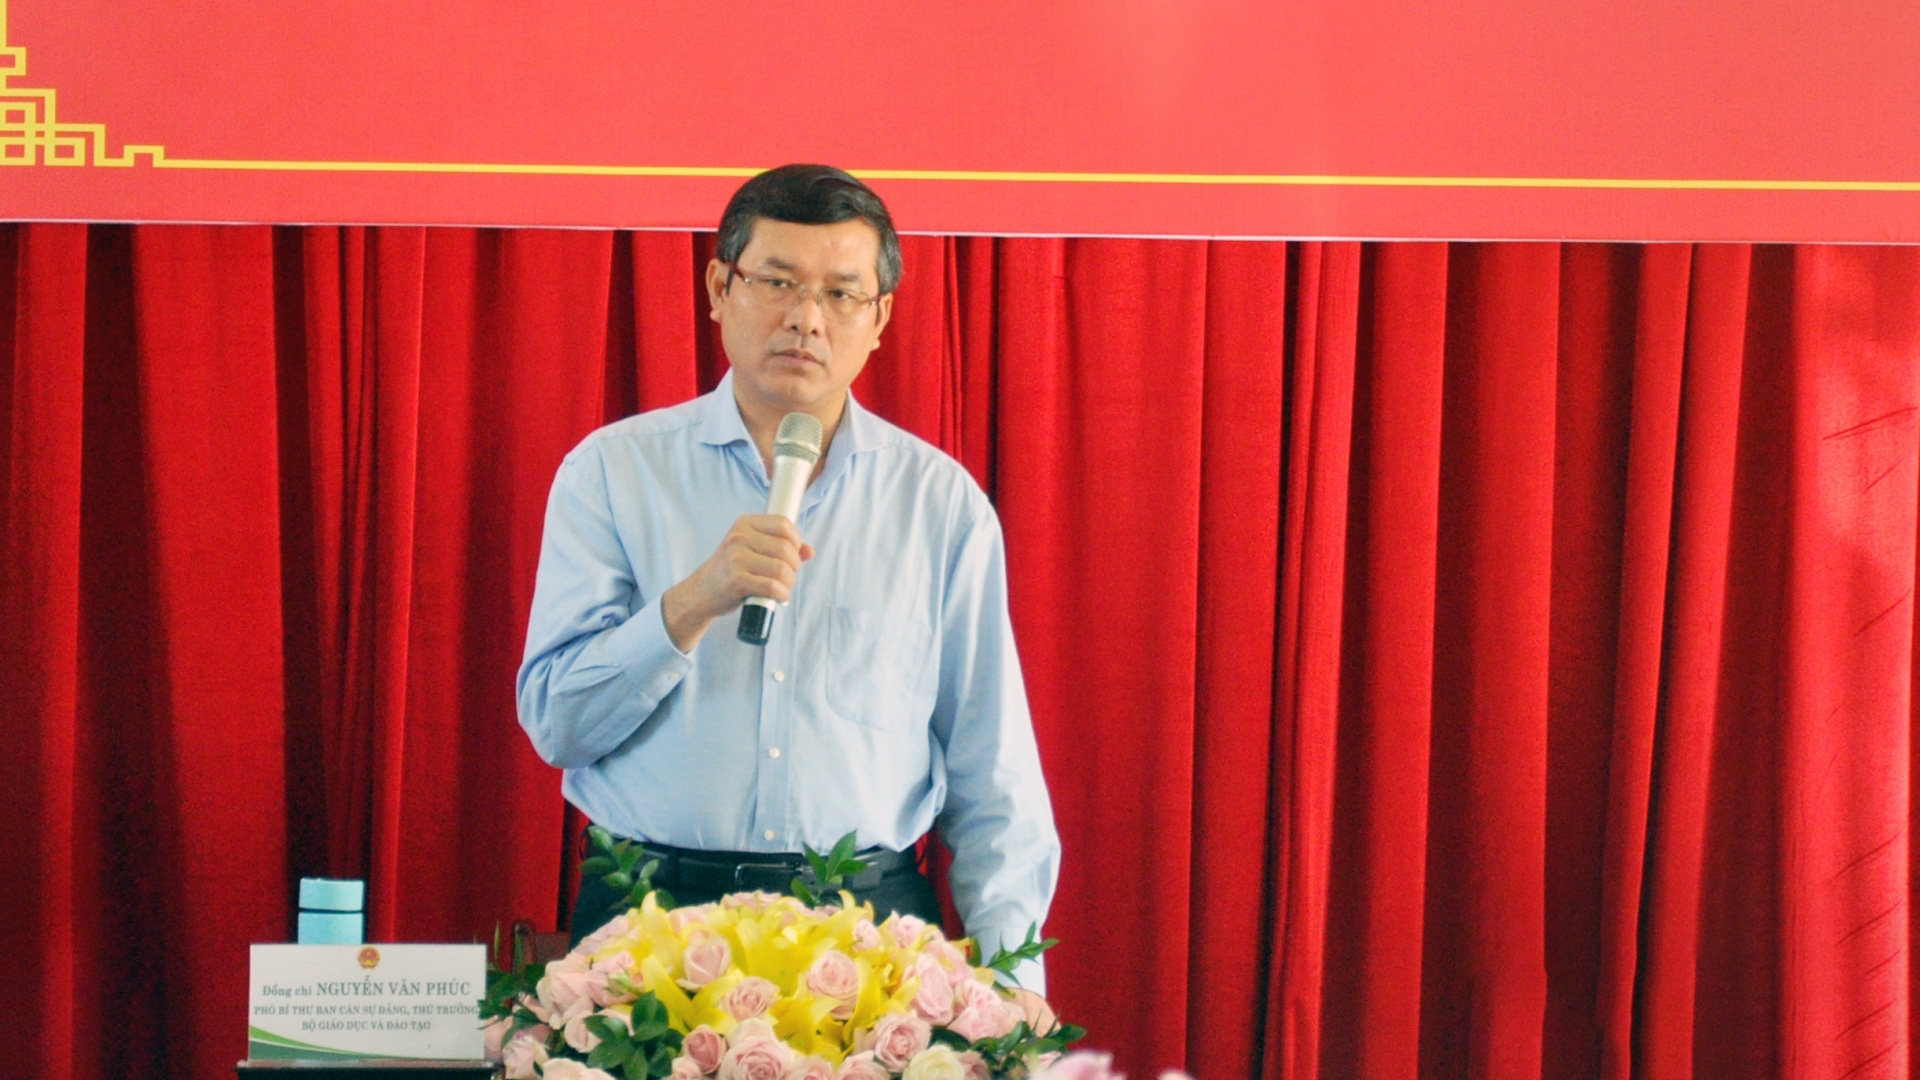 Thứ trưởng Nguyễn Văn Phúc đánh giá cao những thành tích của Trường Đại học Đà Lạt đạt được trong 10 năm qua